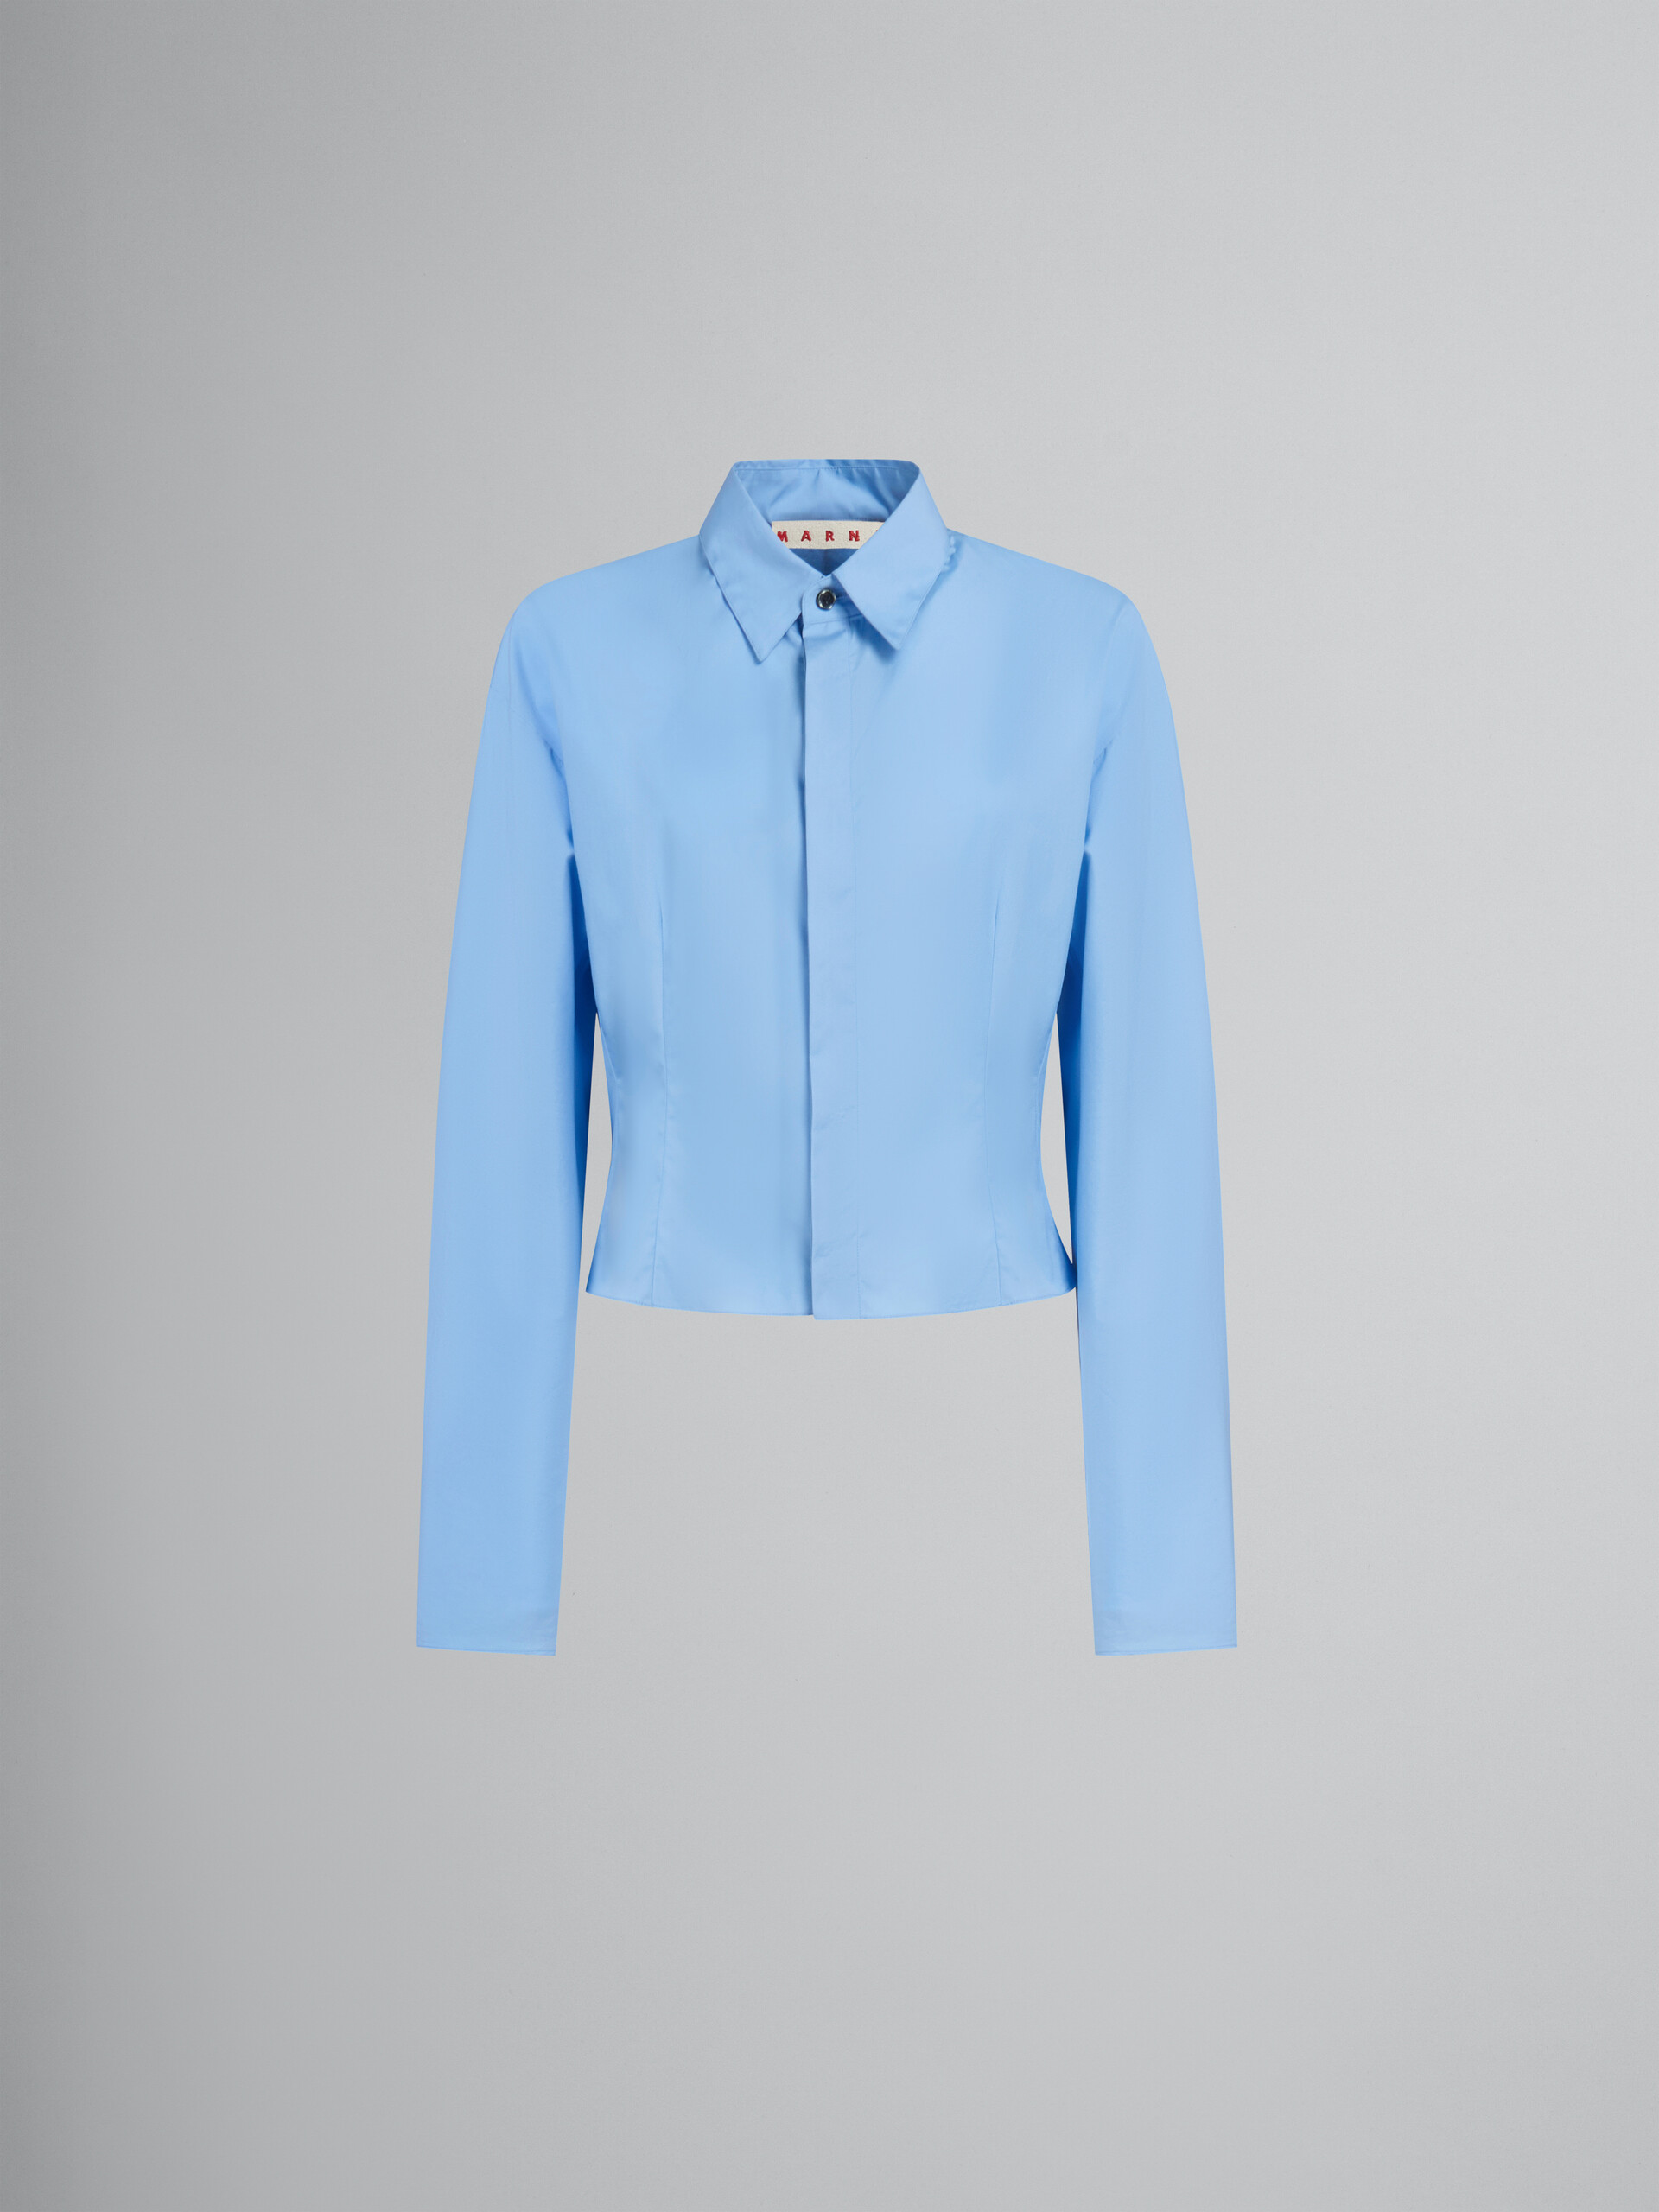 Camicia in popeline biologico blu con schiena arricciata - Camicie - Image 1